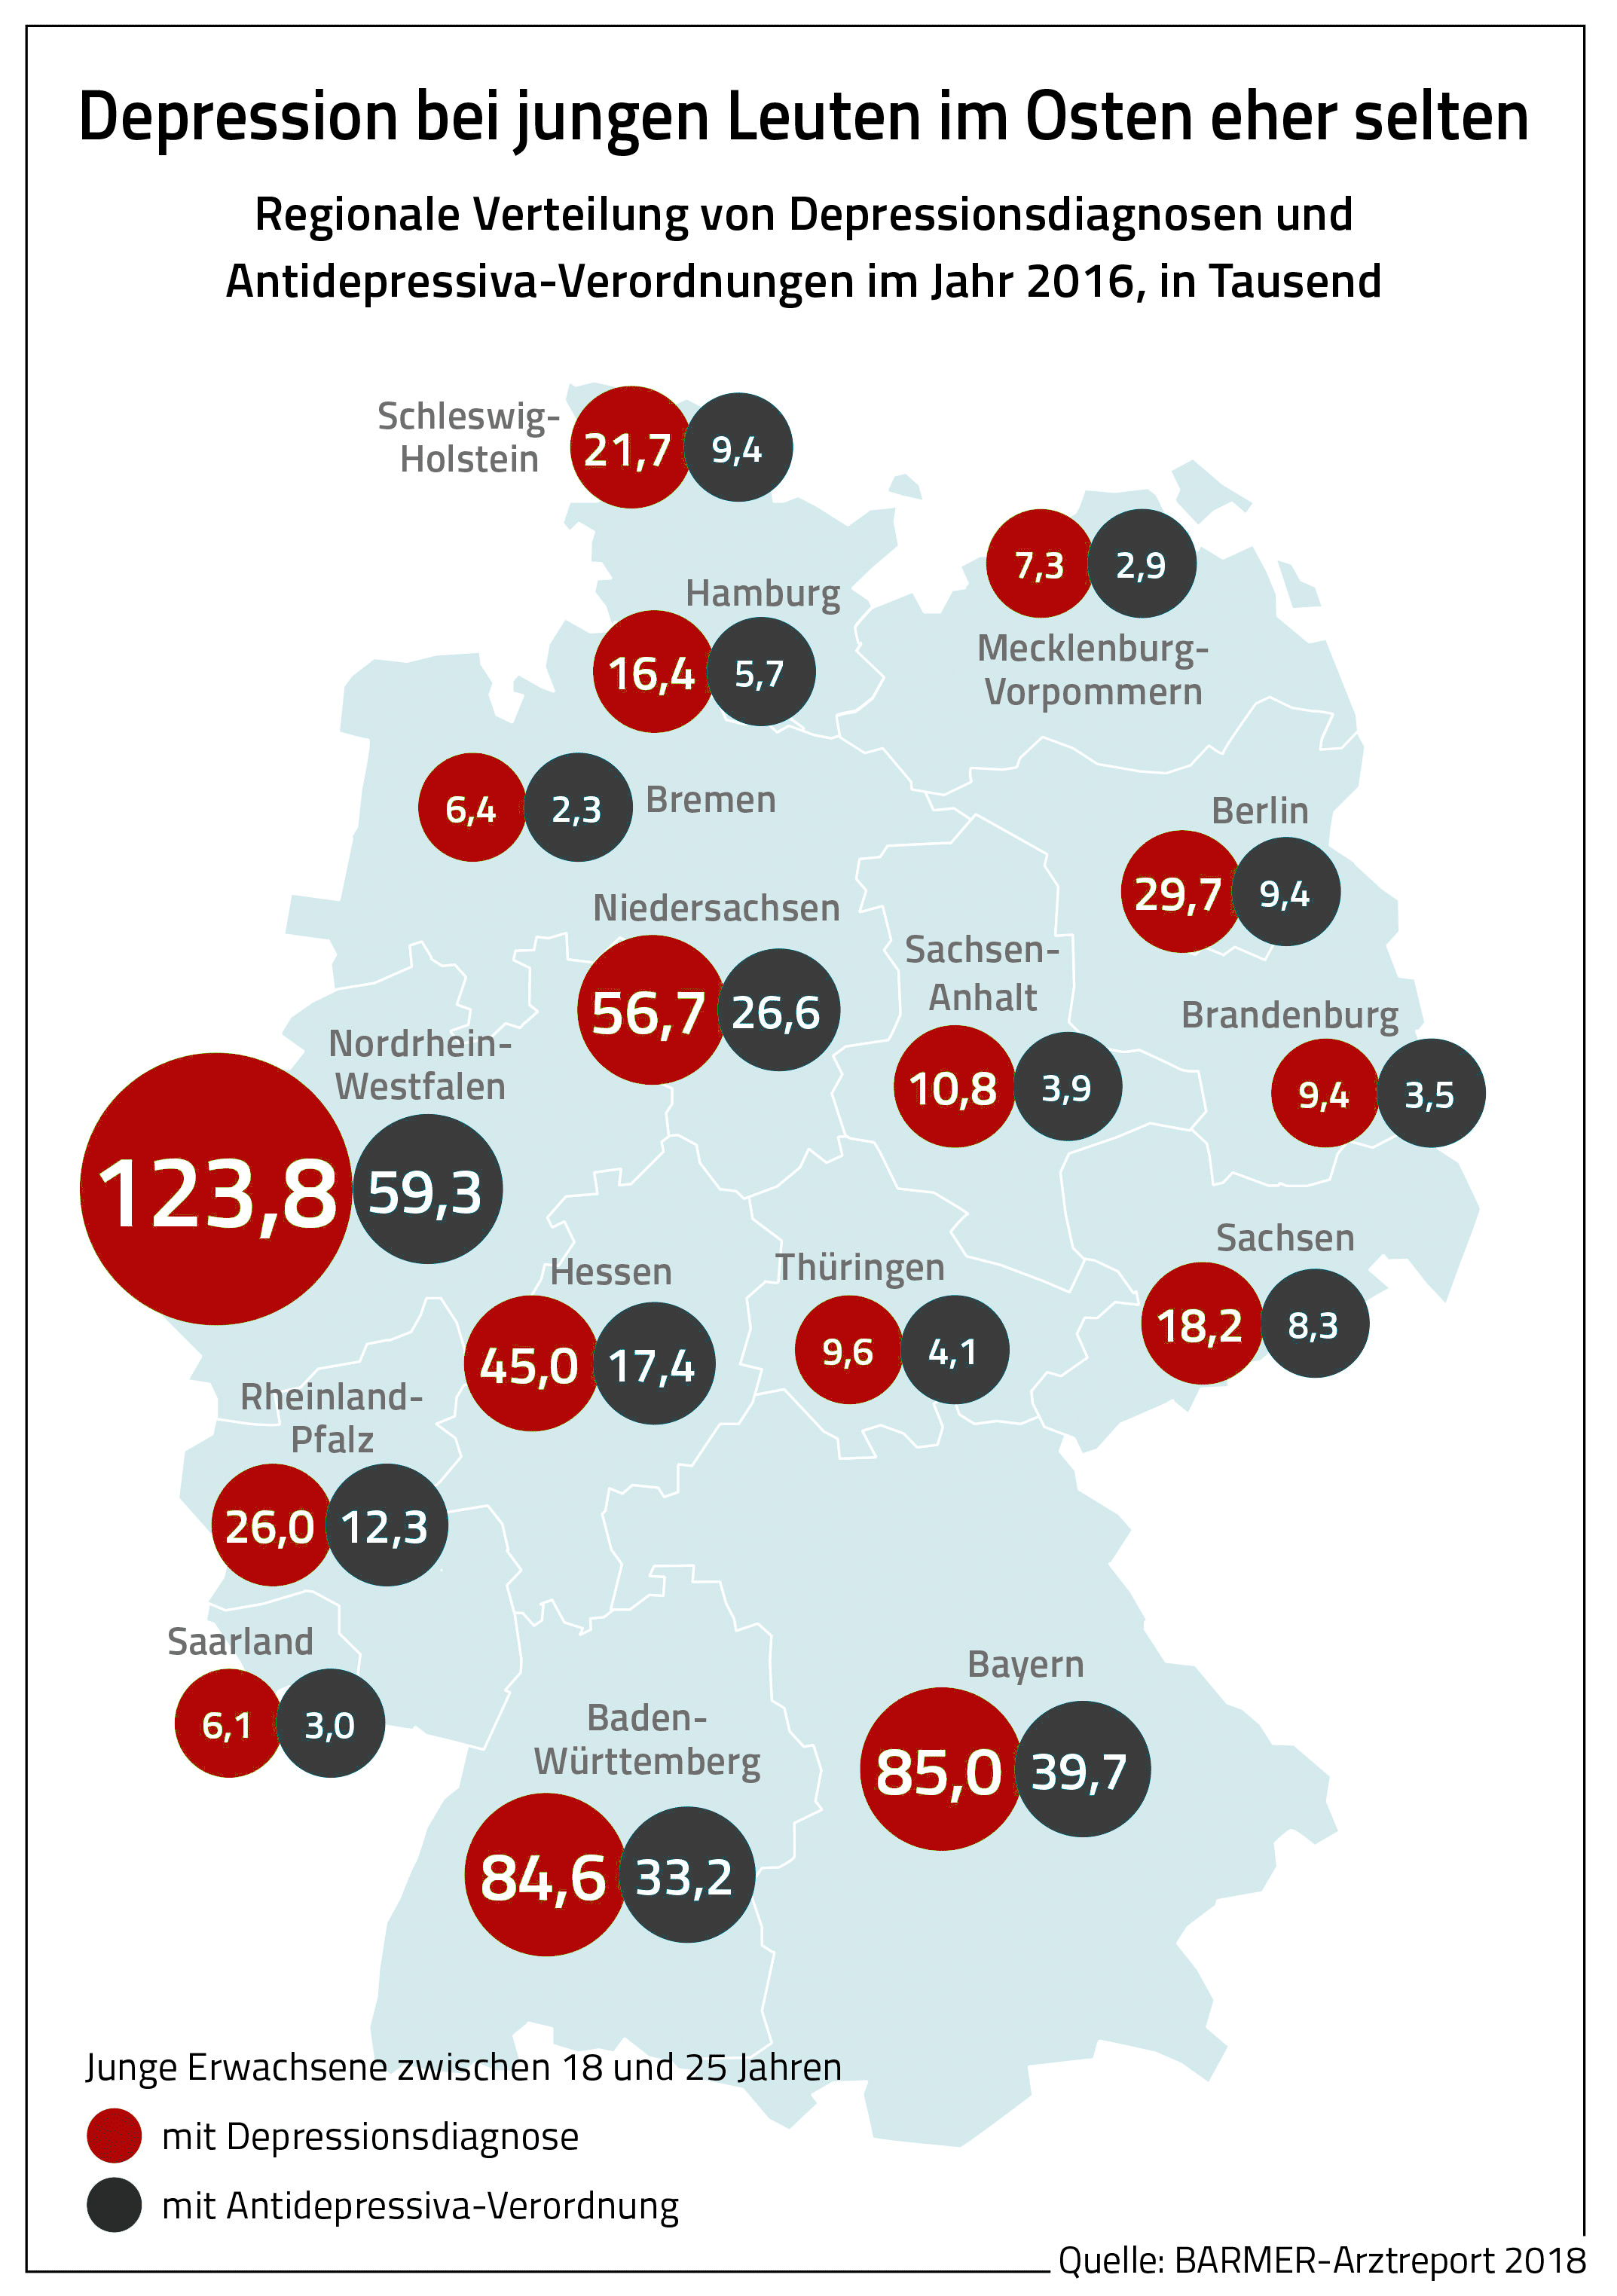 Grafik Barmer-Arztreport 2018: Depressionen bei junge Leuten in Ostdeutschland eher selten.